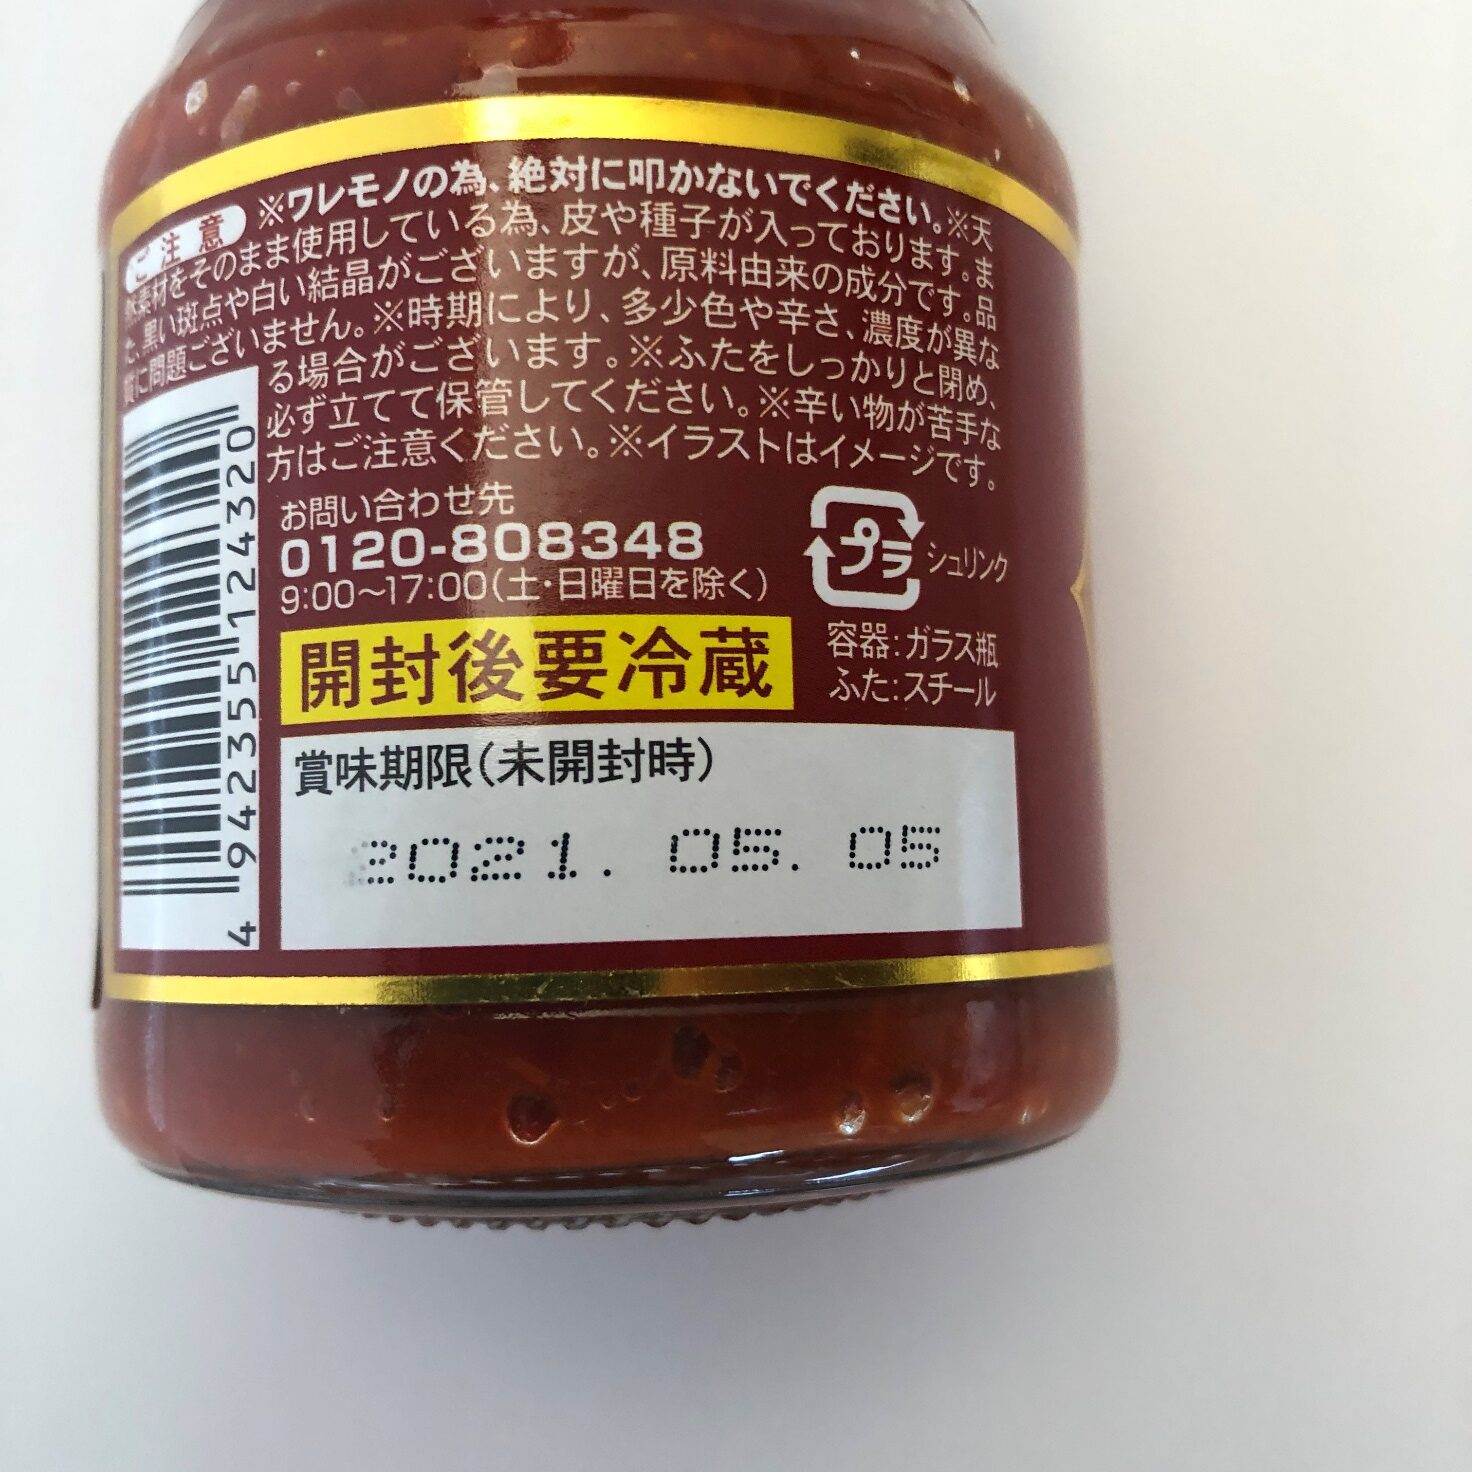 業務スーパーの四川豆板醤の賞味期限表記